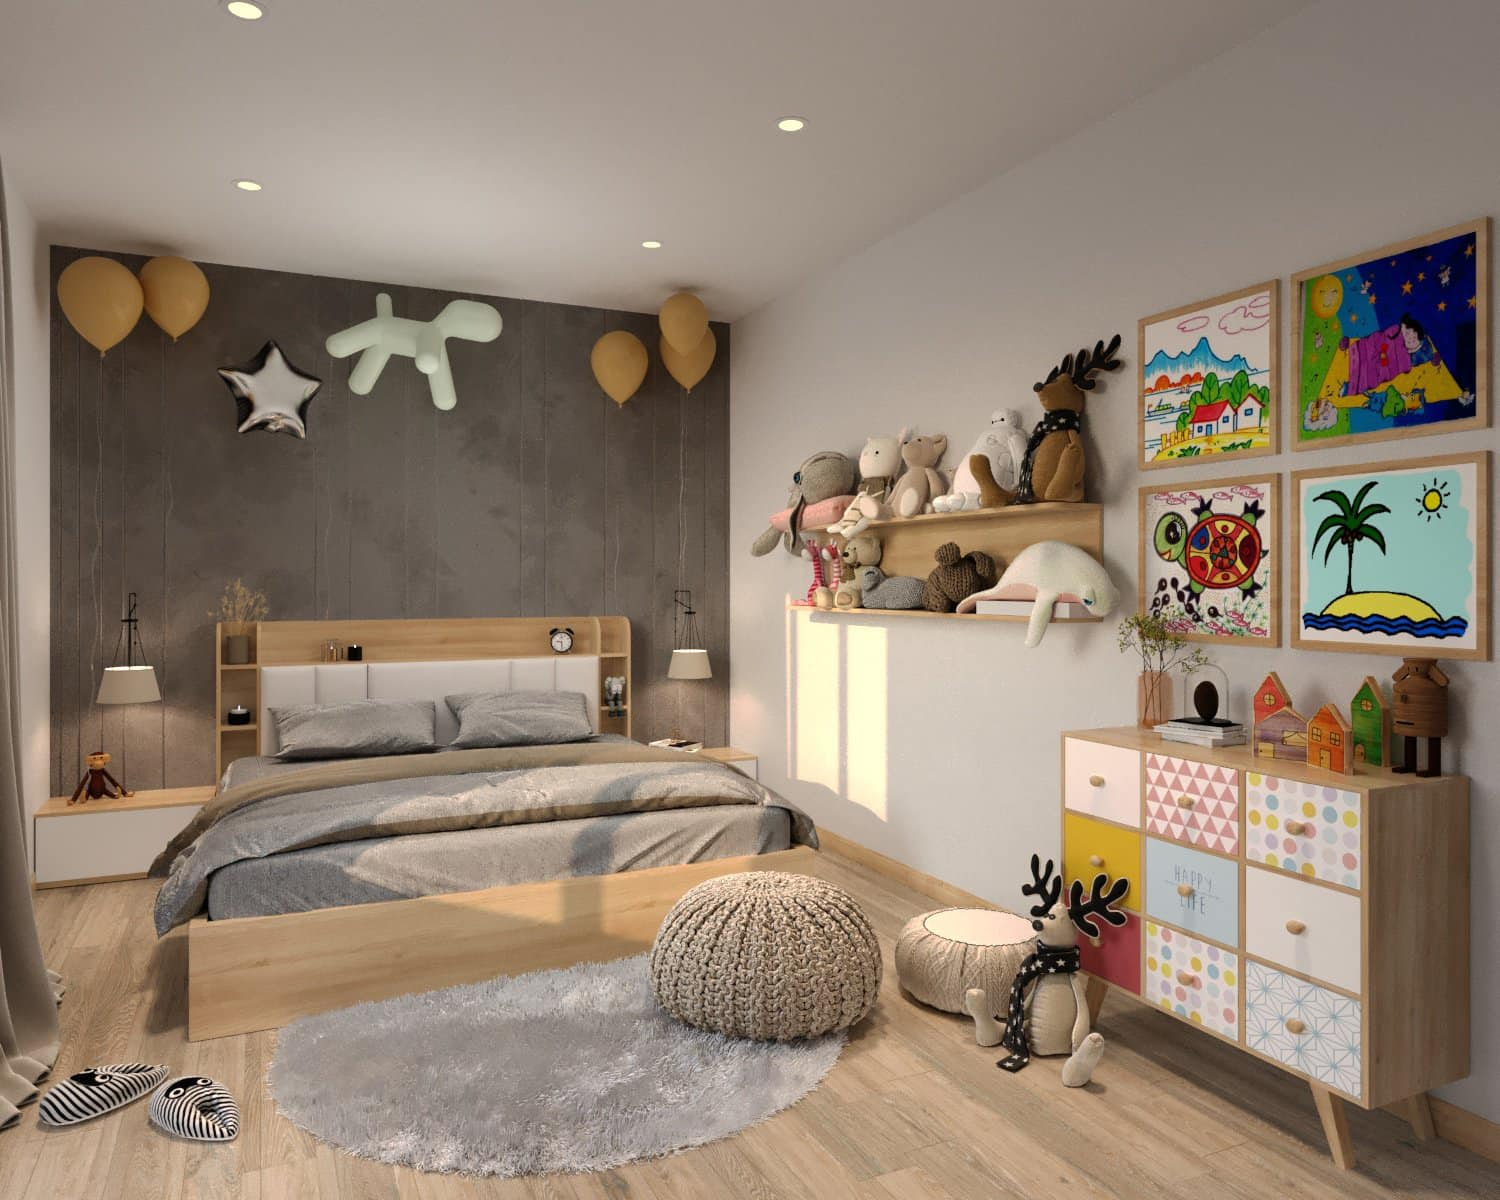 Tham khảo mẫu thiết kế phòng ngủ cho trẻ em